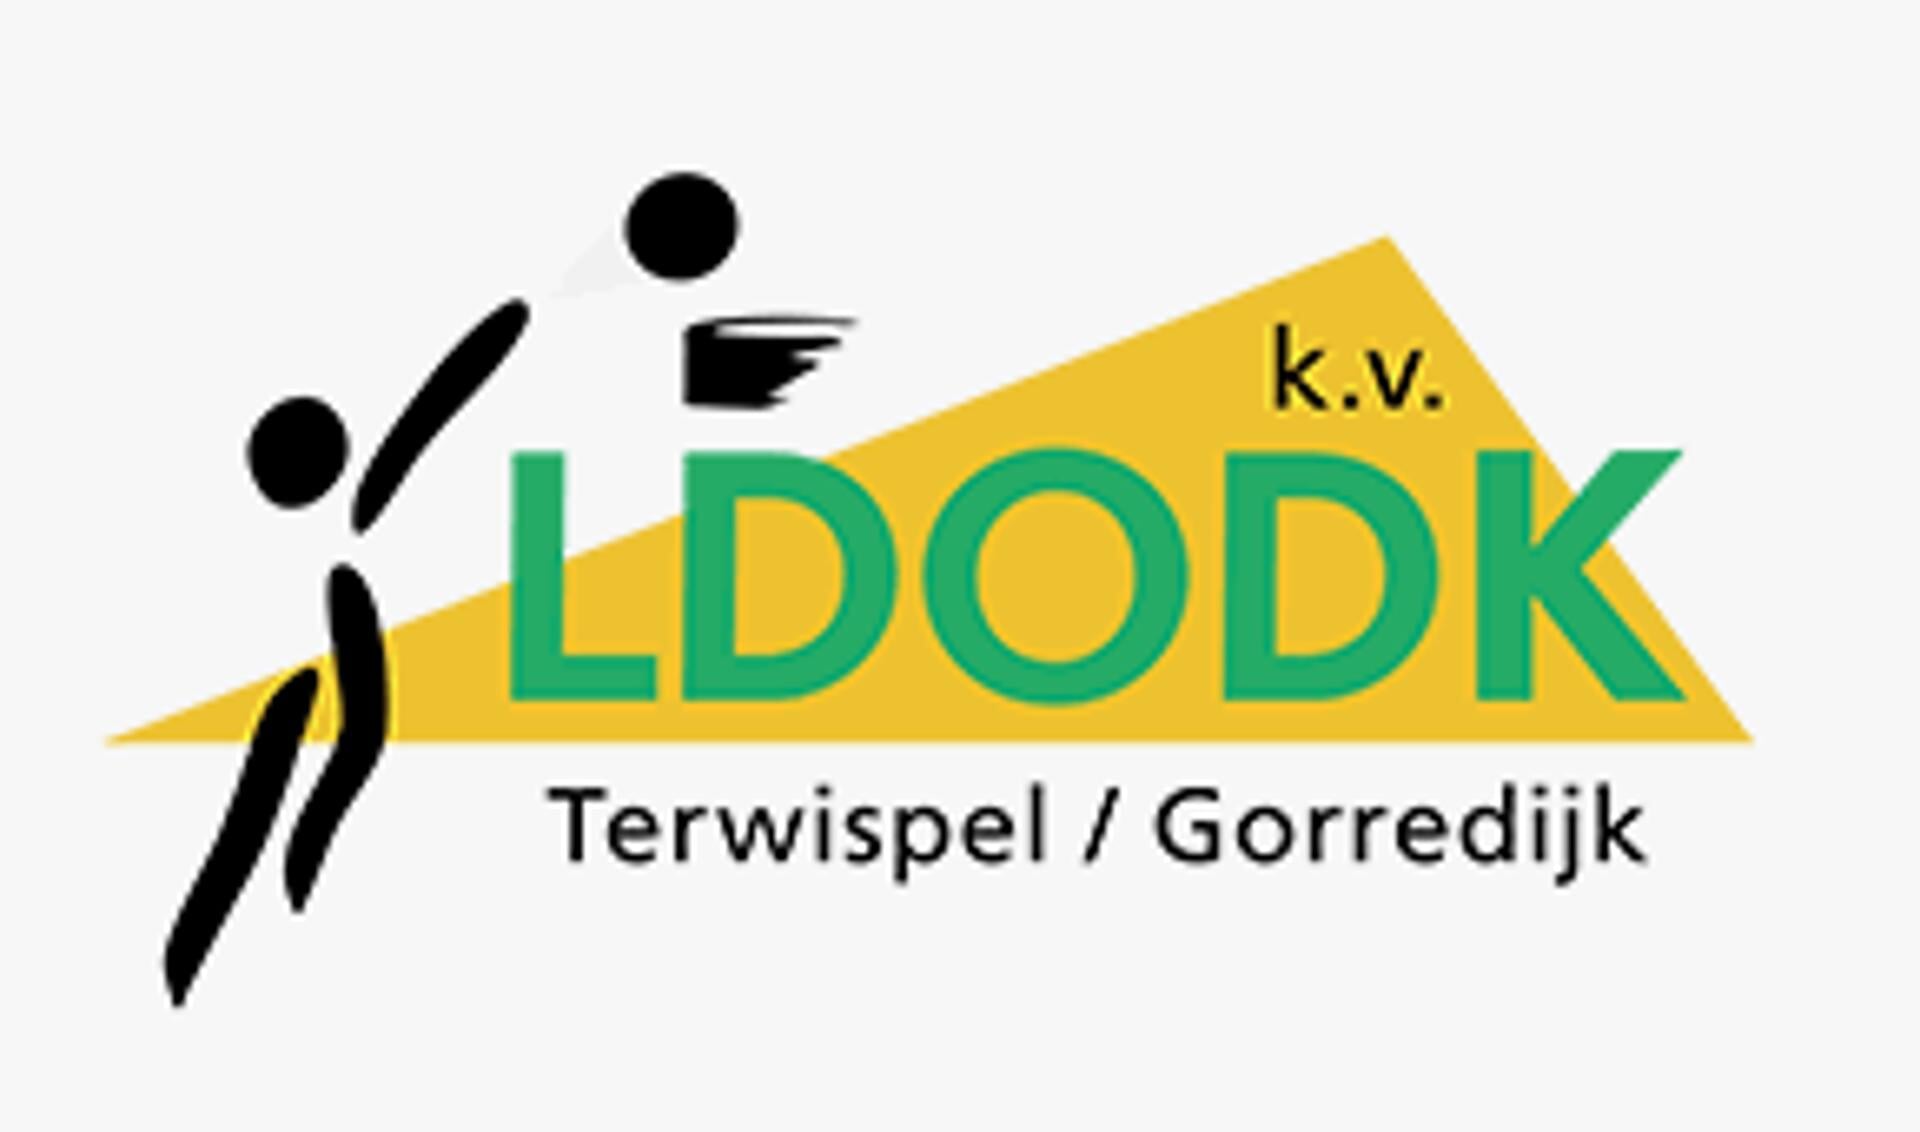 De korfballers van LDODK beginnen op woenasdag 24 maart in Delft aan hun eerste play-off duel in de strijd om het kampioenschap van Nederland.